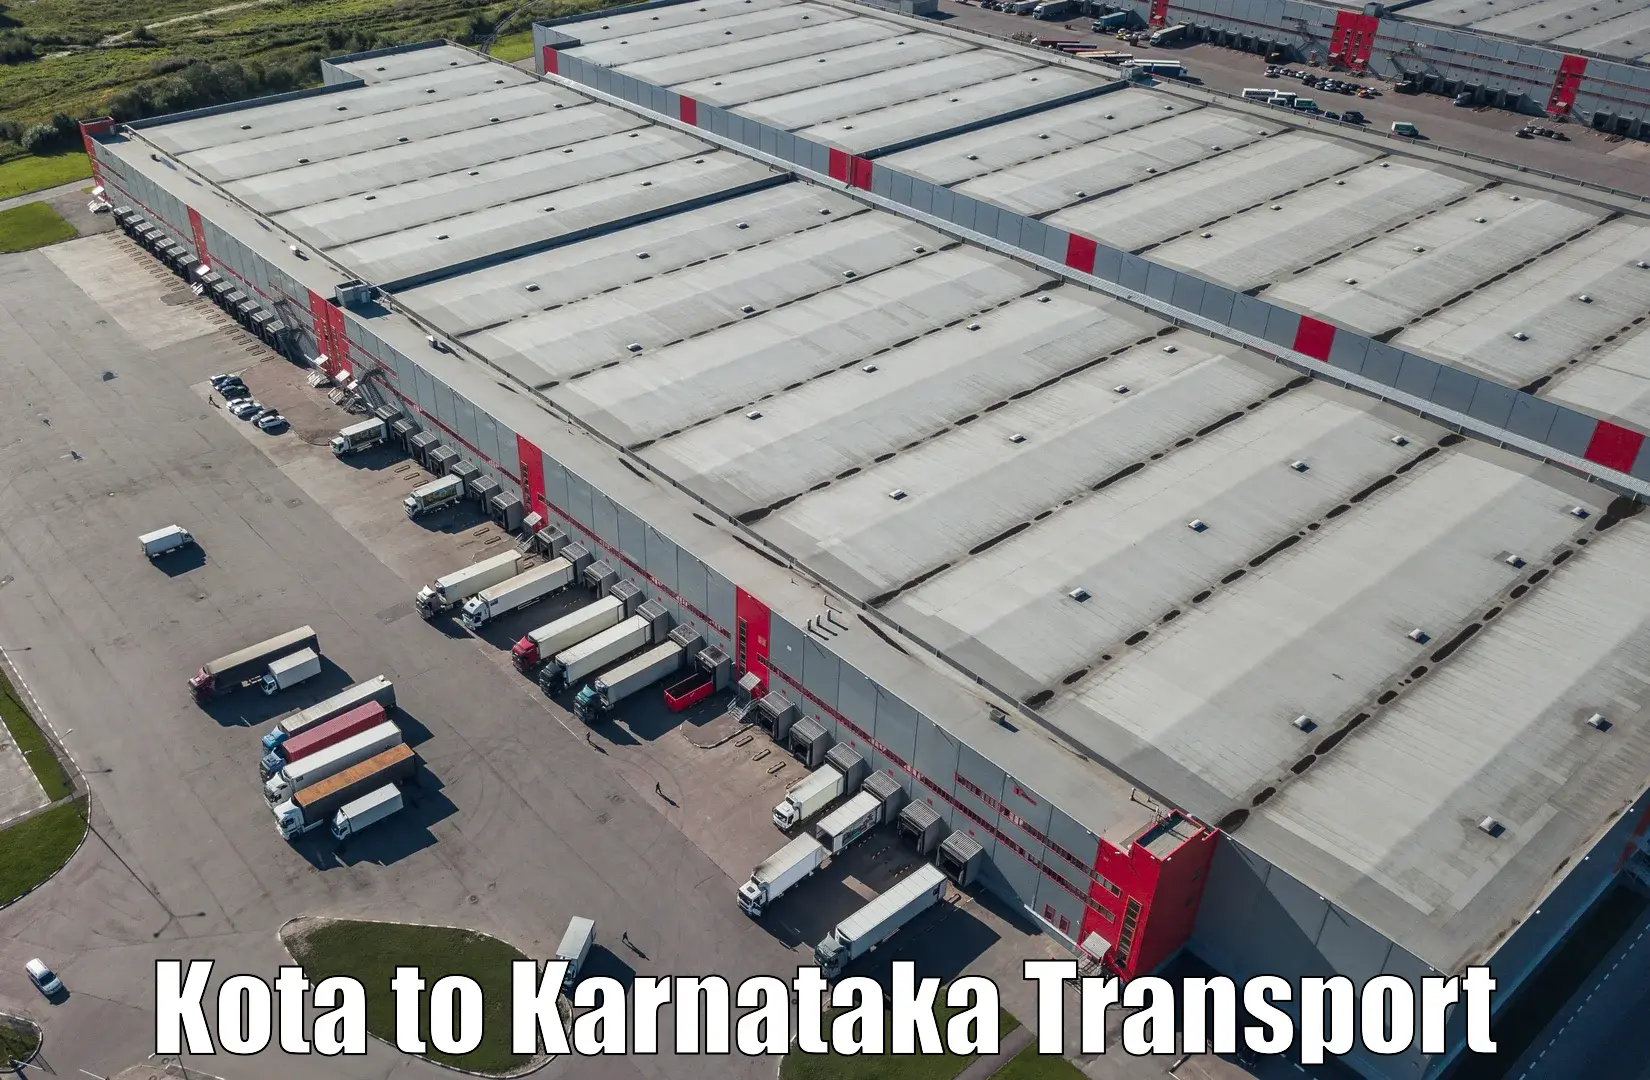 Shipping partner Kota to Kittur